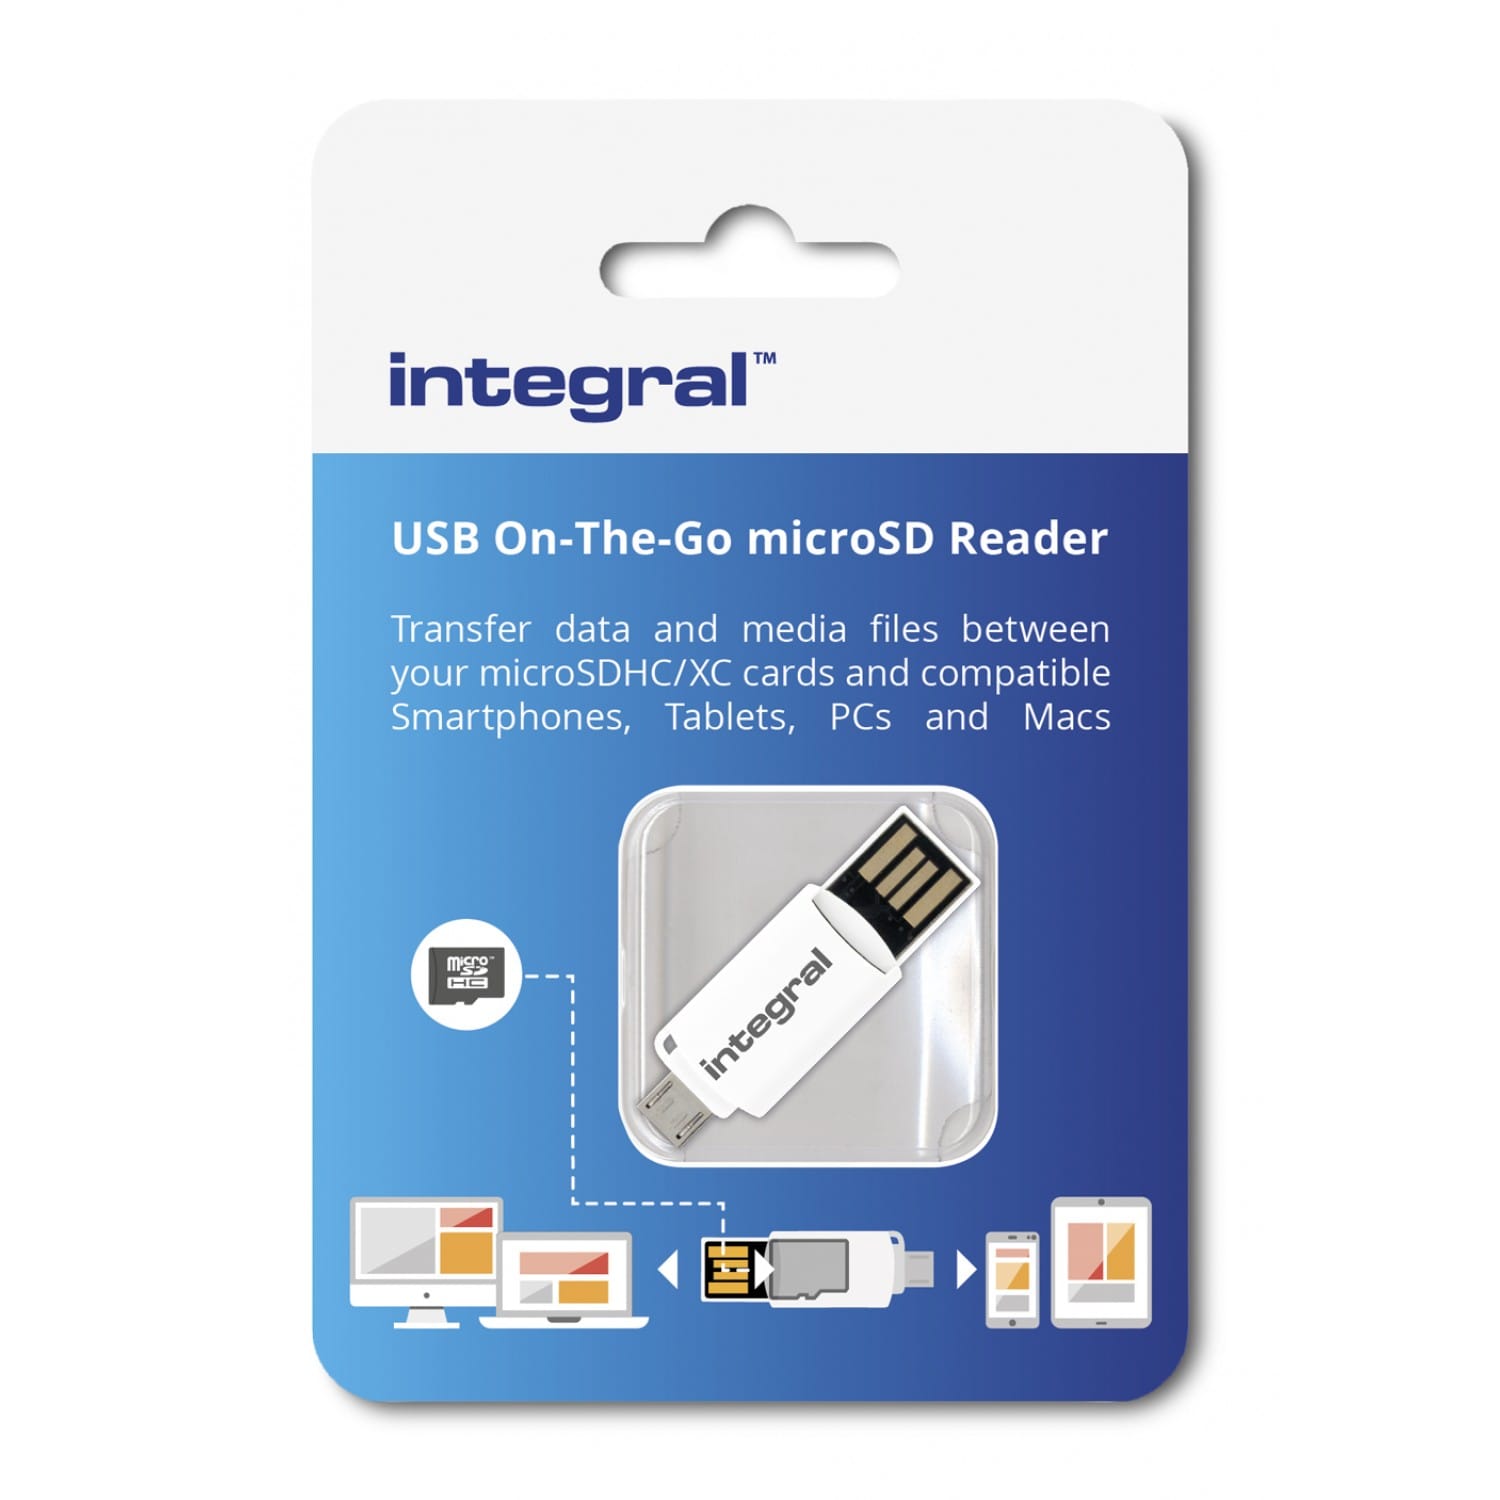 5€84 sur Lecteur de cartes SD / micro, adaptateur USB OTG Micro